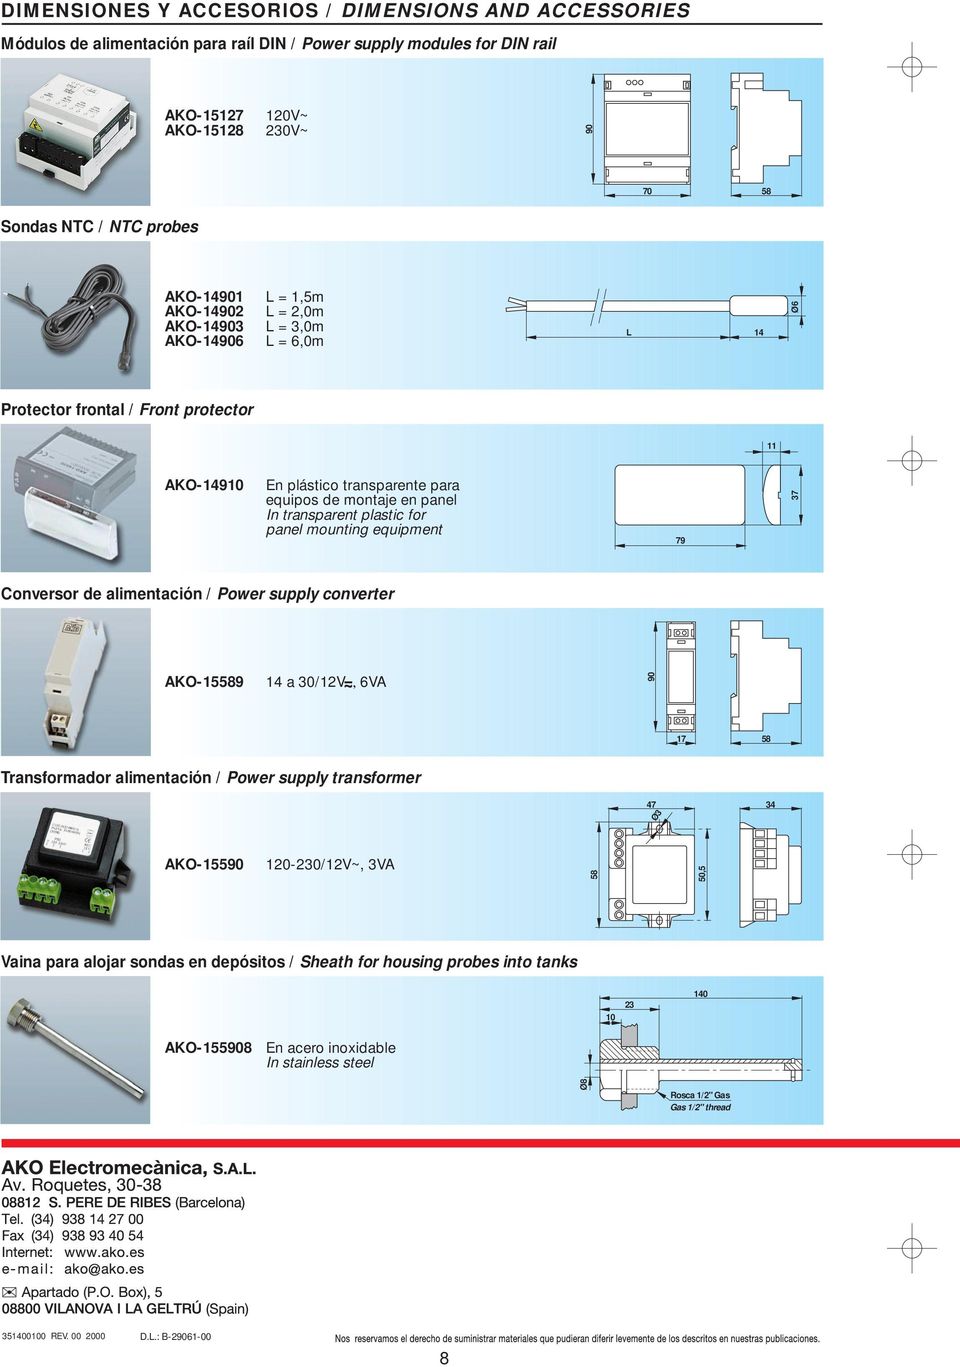 for panel mounting equipment 79 37 Conversor de alimentación / converter AKO-5589 4 a 3/V, 6VA 9 7 58 Transformador alimentación / transformer 47 Ø3 34 AKO-559-3/V~, 3VA 58 5,5